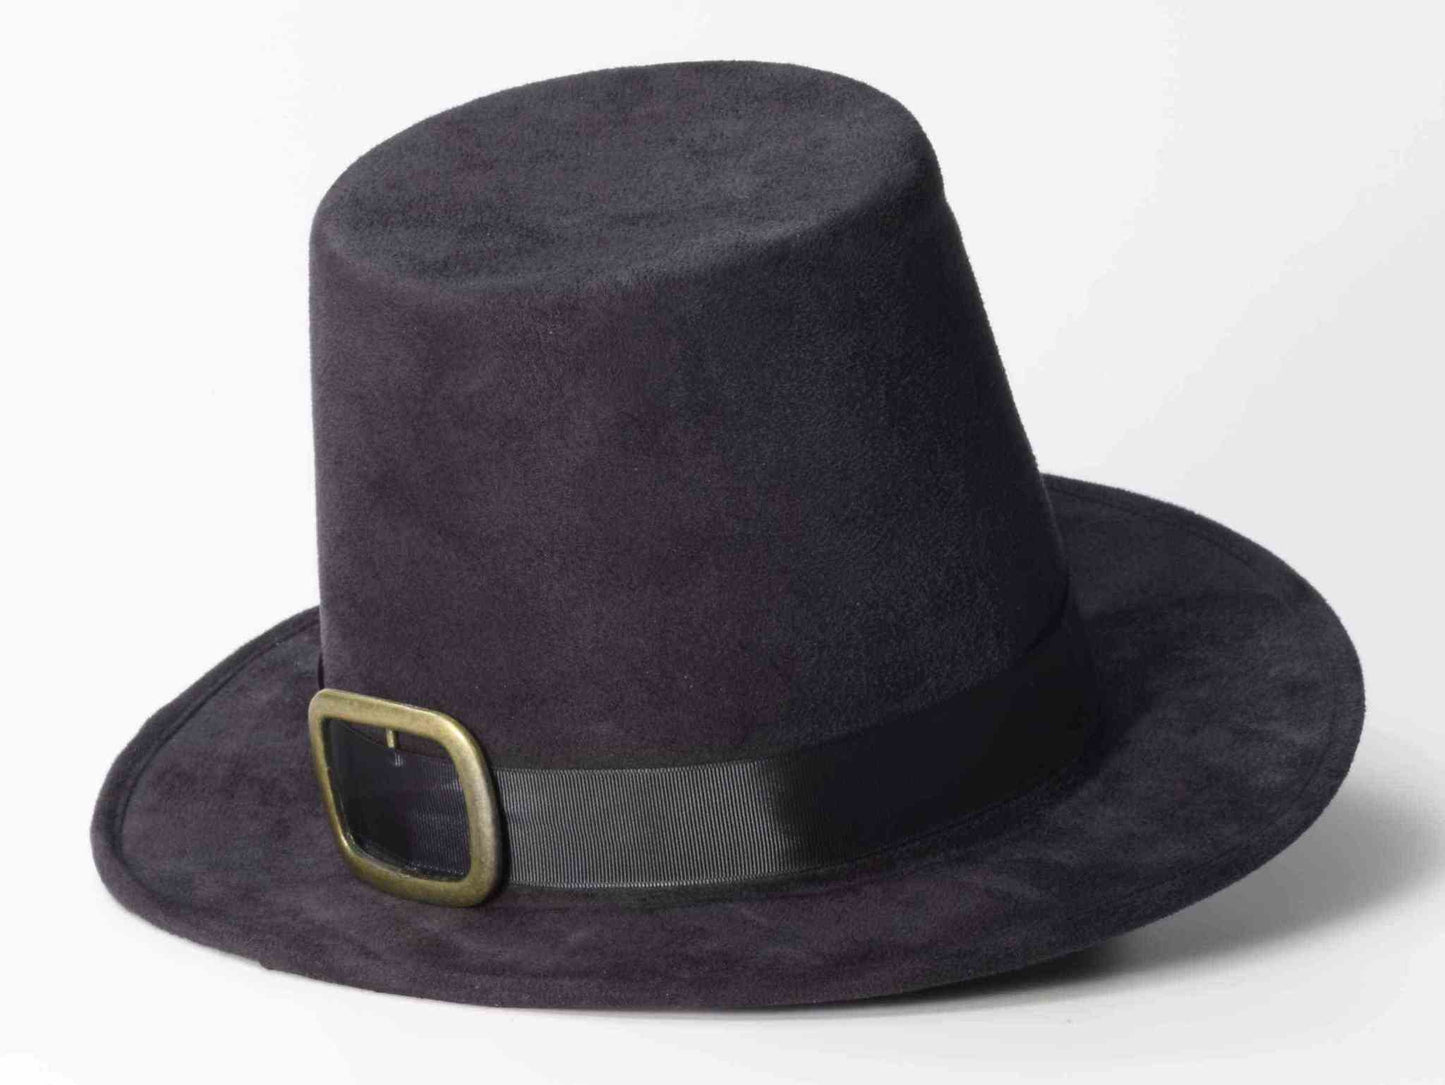 Super Deluxe Pilgrim Hat: Black